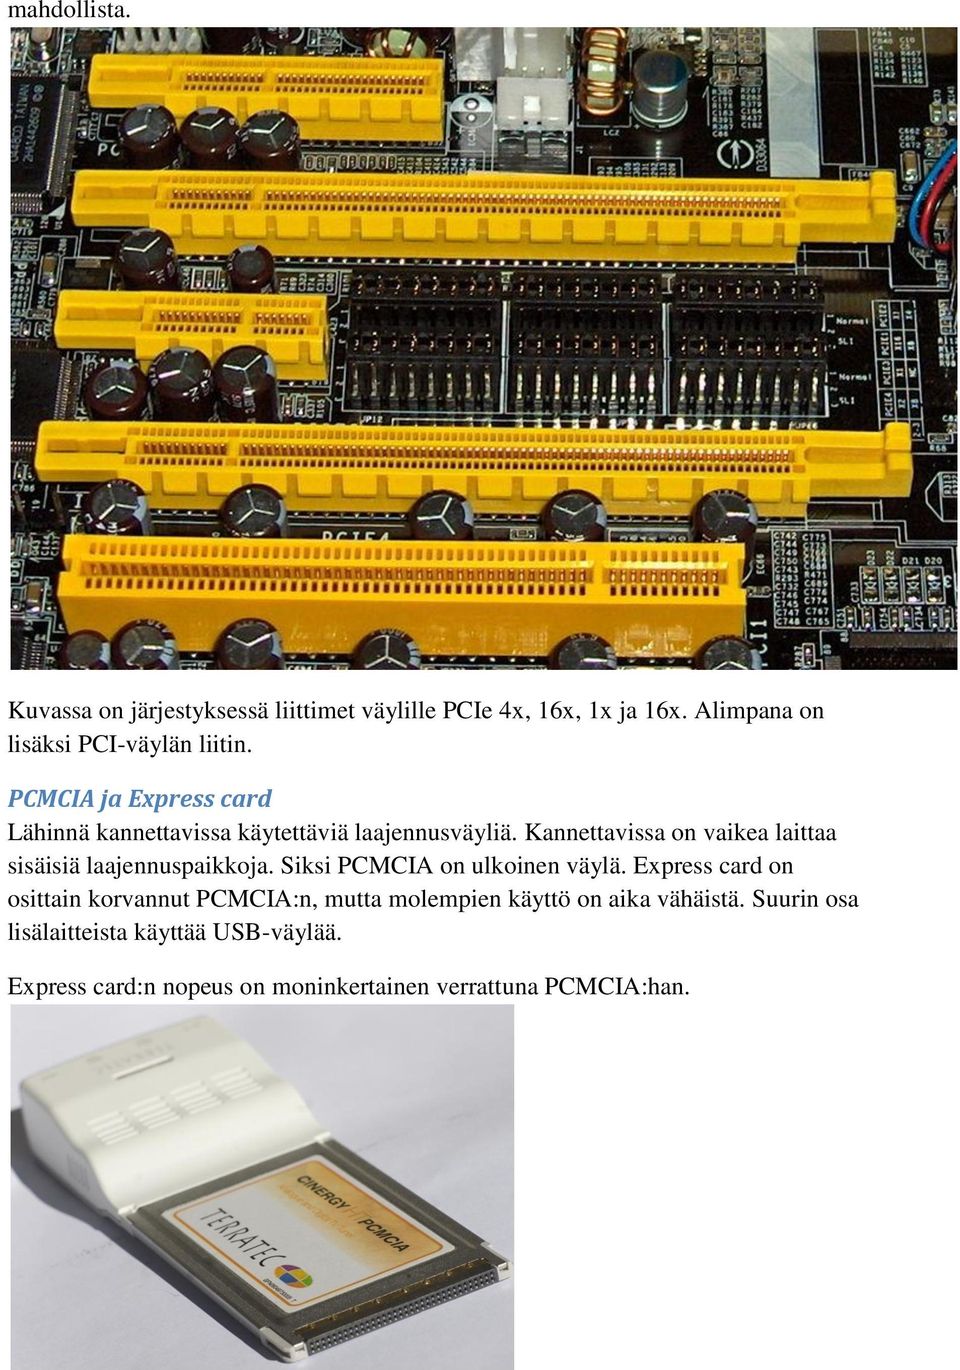 Kannettavissa on vaikea laittaa sisäisiä laajennuspaikkoja. Siksi PCMCIA on ulkoinen väylä.